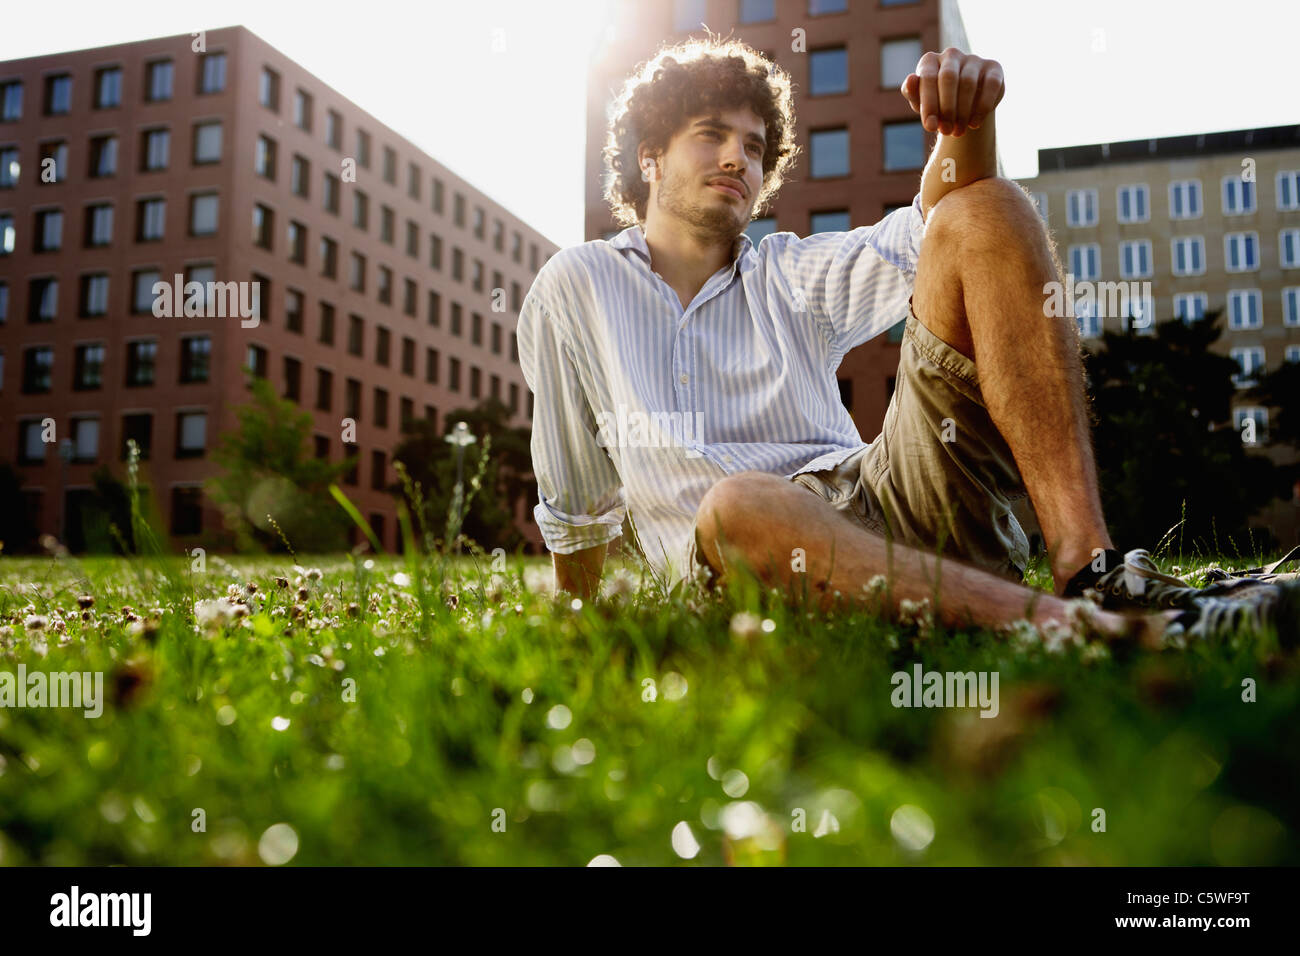 Germania, Berlino, giovane uomo rilassarsi sul prato, in background alti edifici Foto Stock